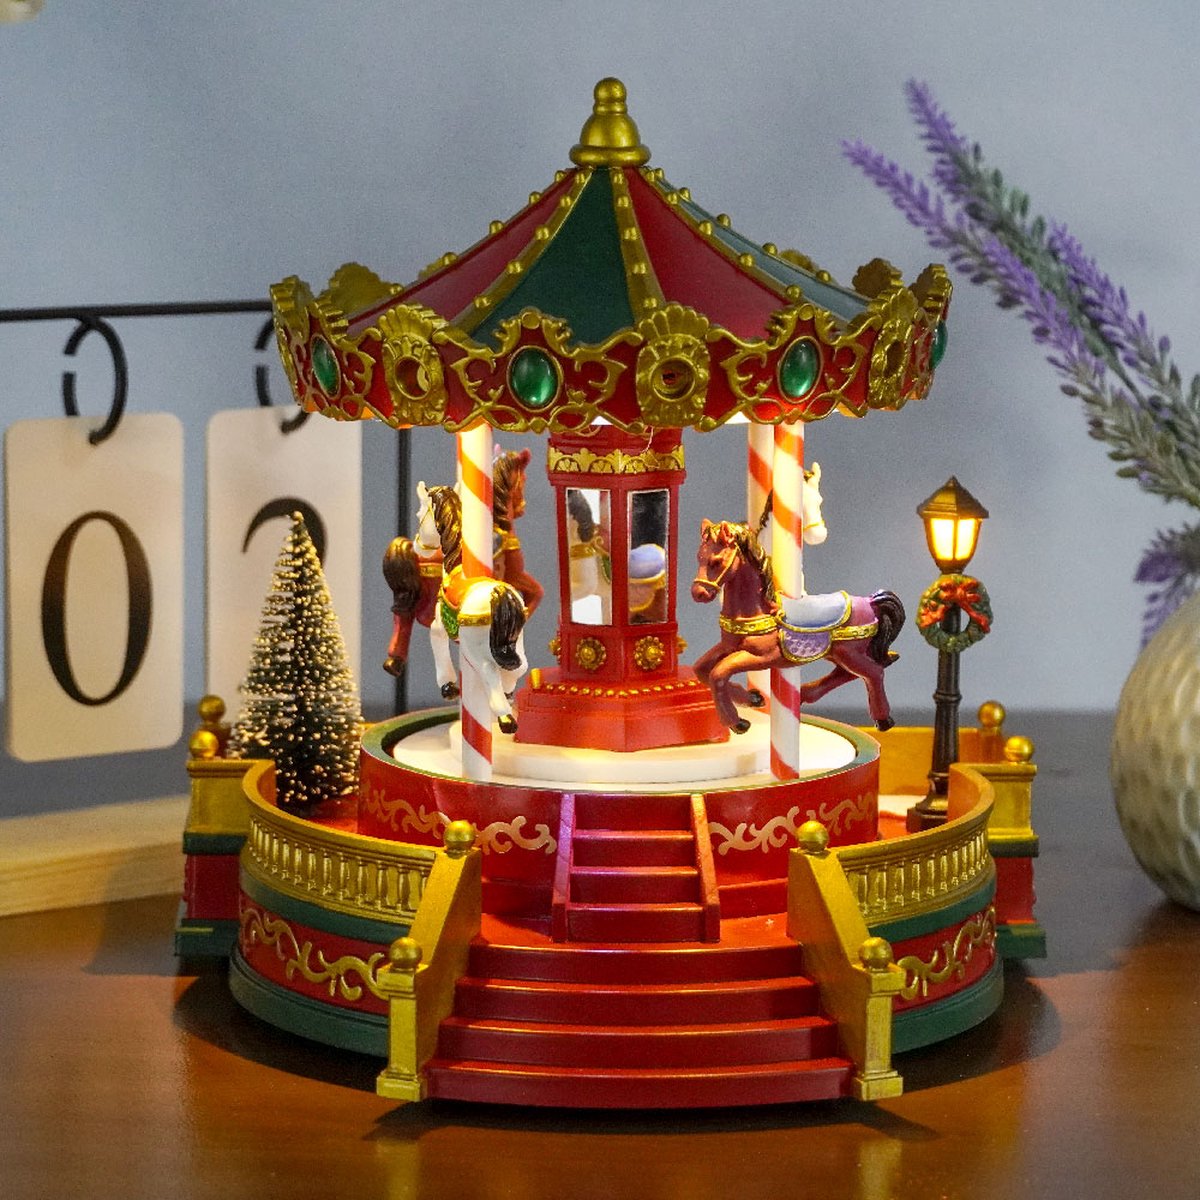 Kristmar Rotating carousel with LED lighting and music